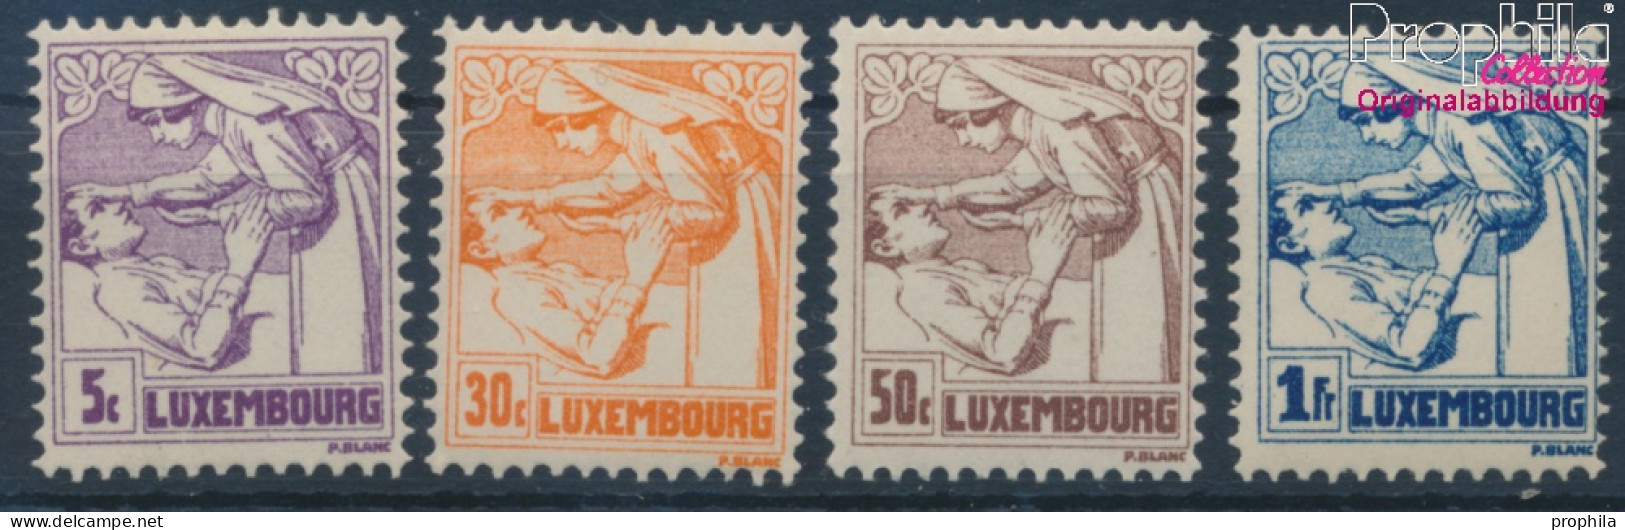 Luxemburg 157-160 (kompl.Ausg.) Postfrisch 1925 Tuberkulose (10363339 - Neufs